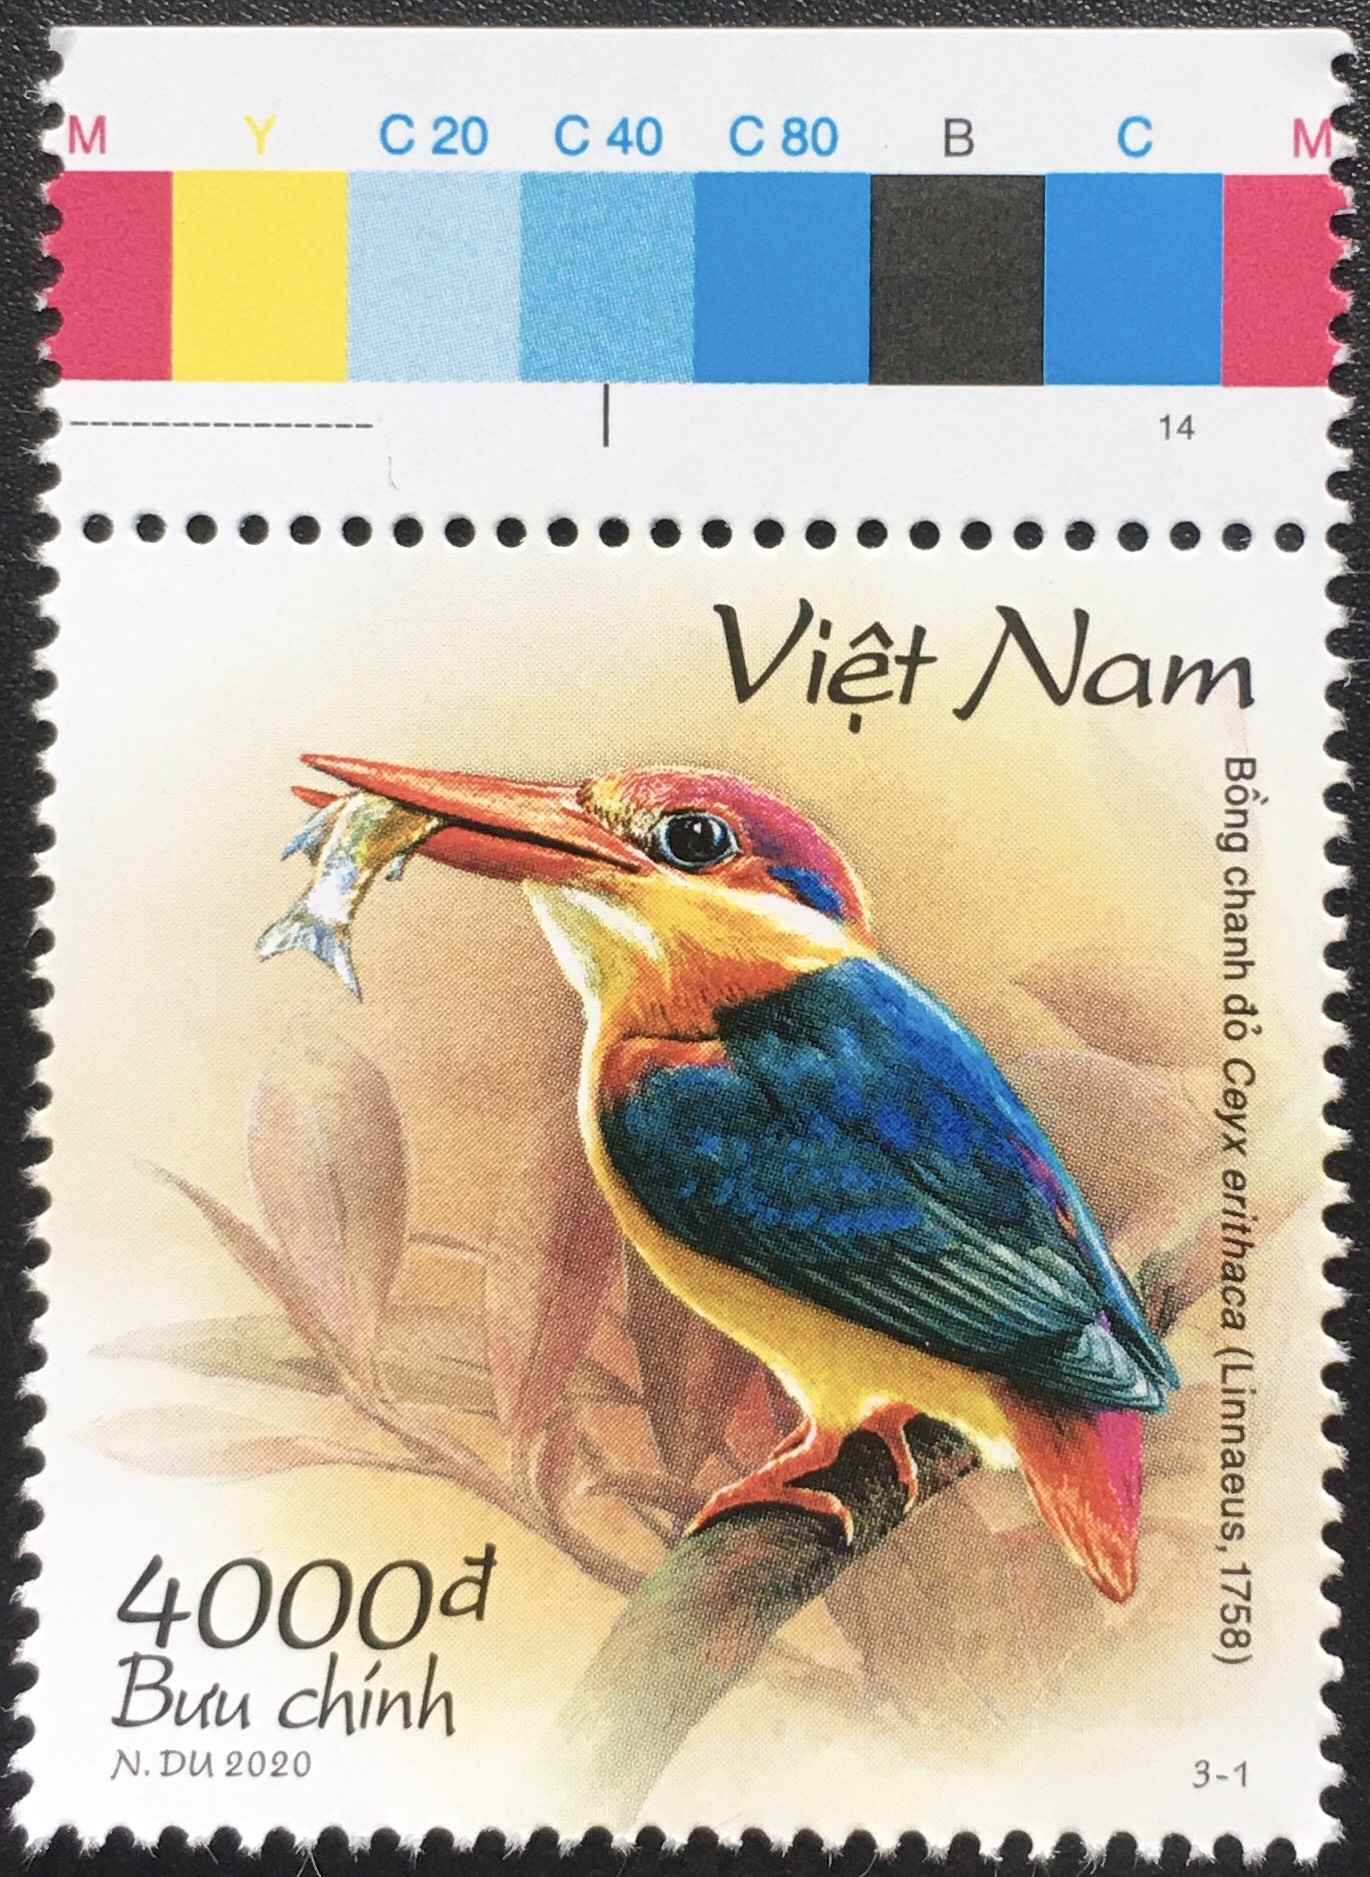 Bộ Tem Sưu Tầm Việt Nam 2020 Chủ Đề Chim - 3 Stamps